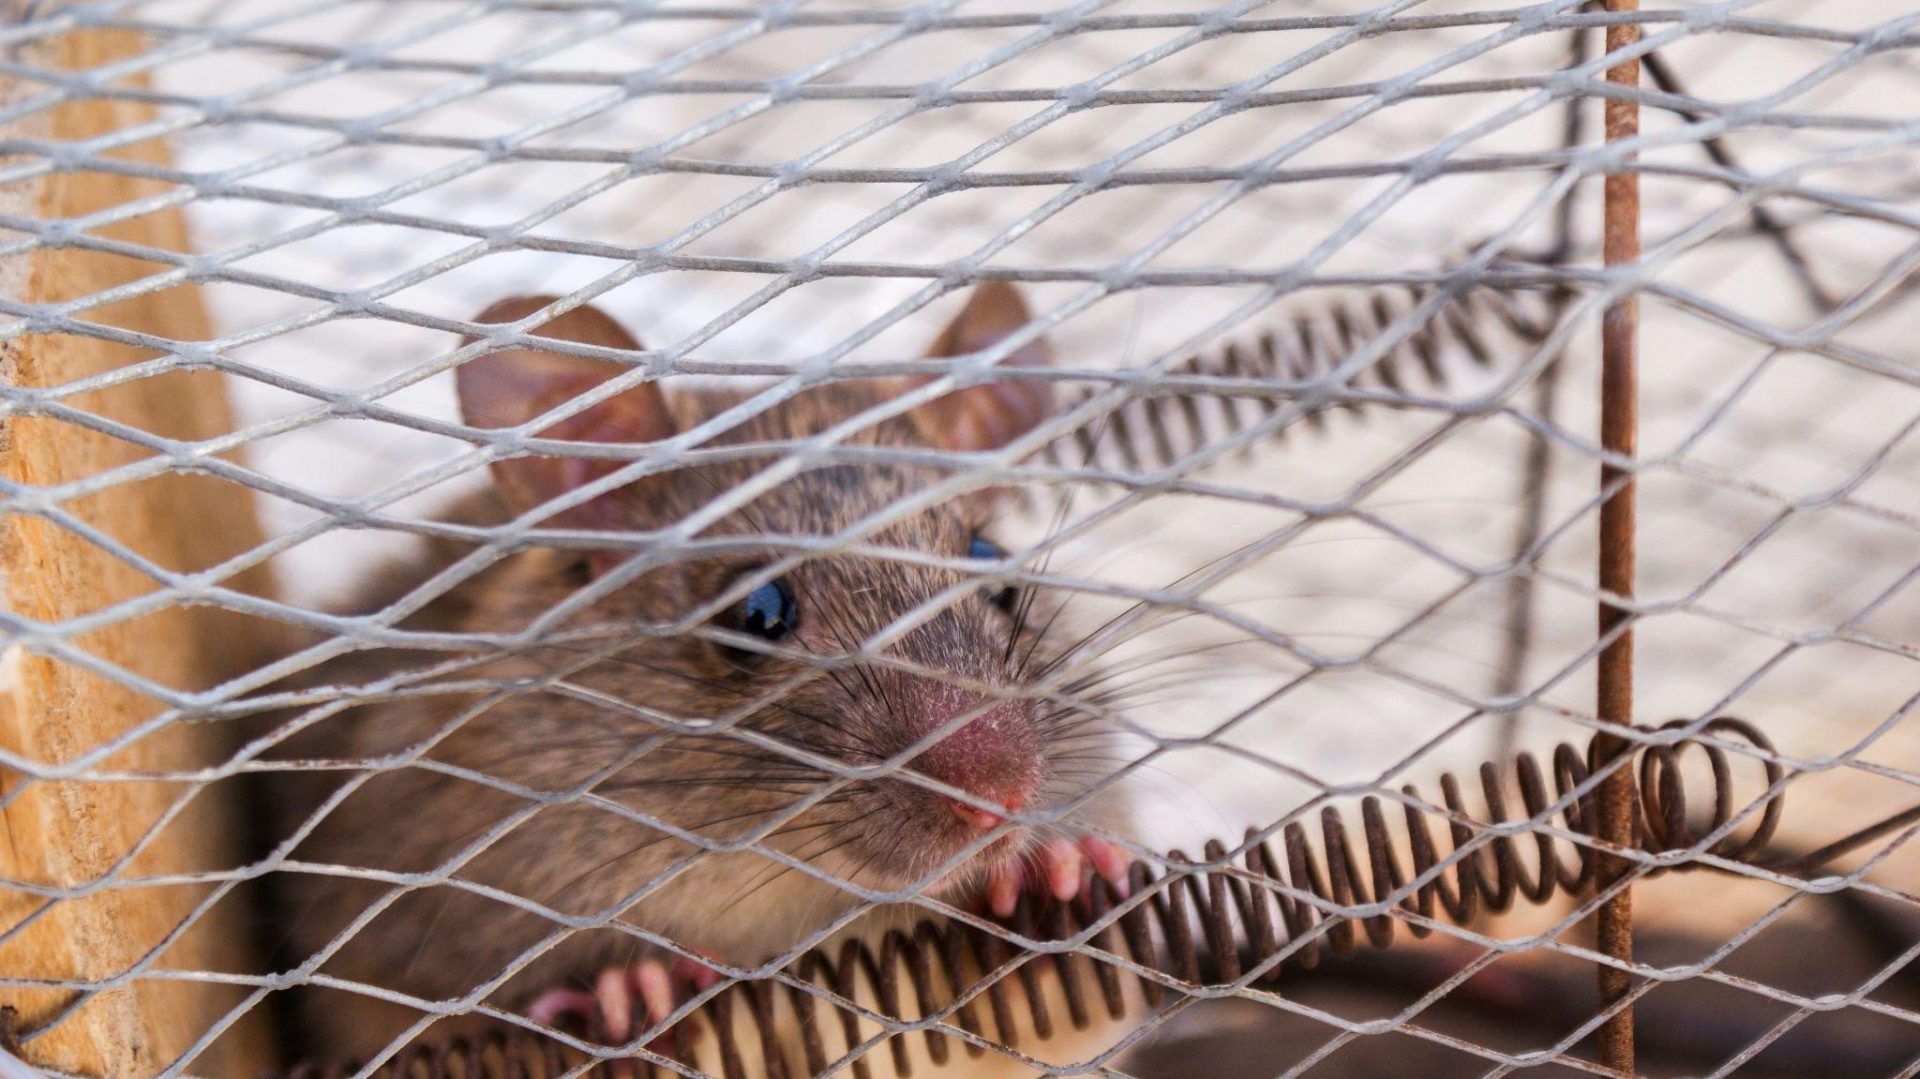 Rat control services in Parrish